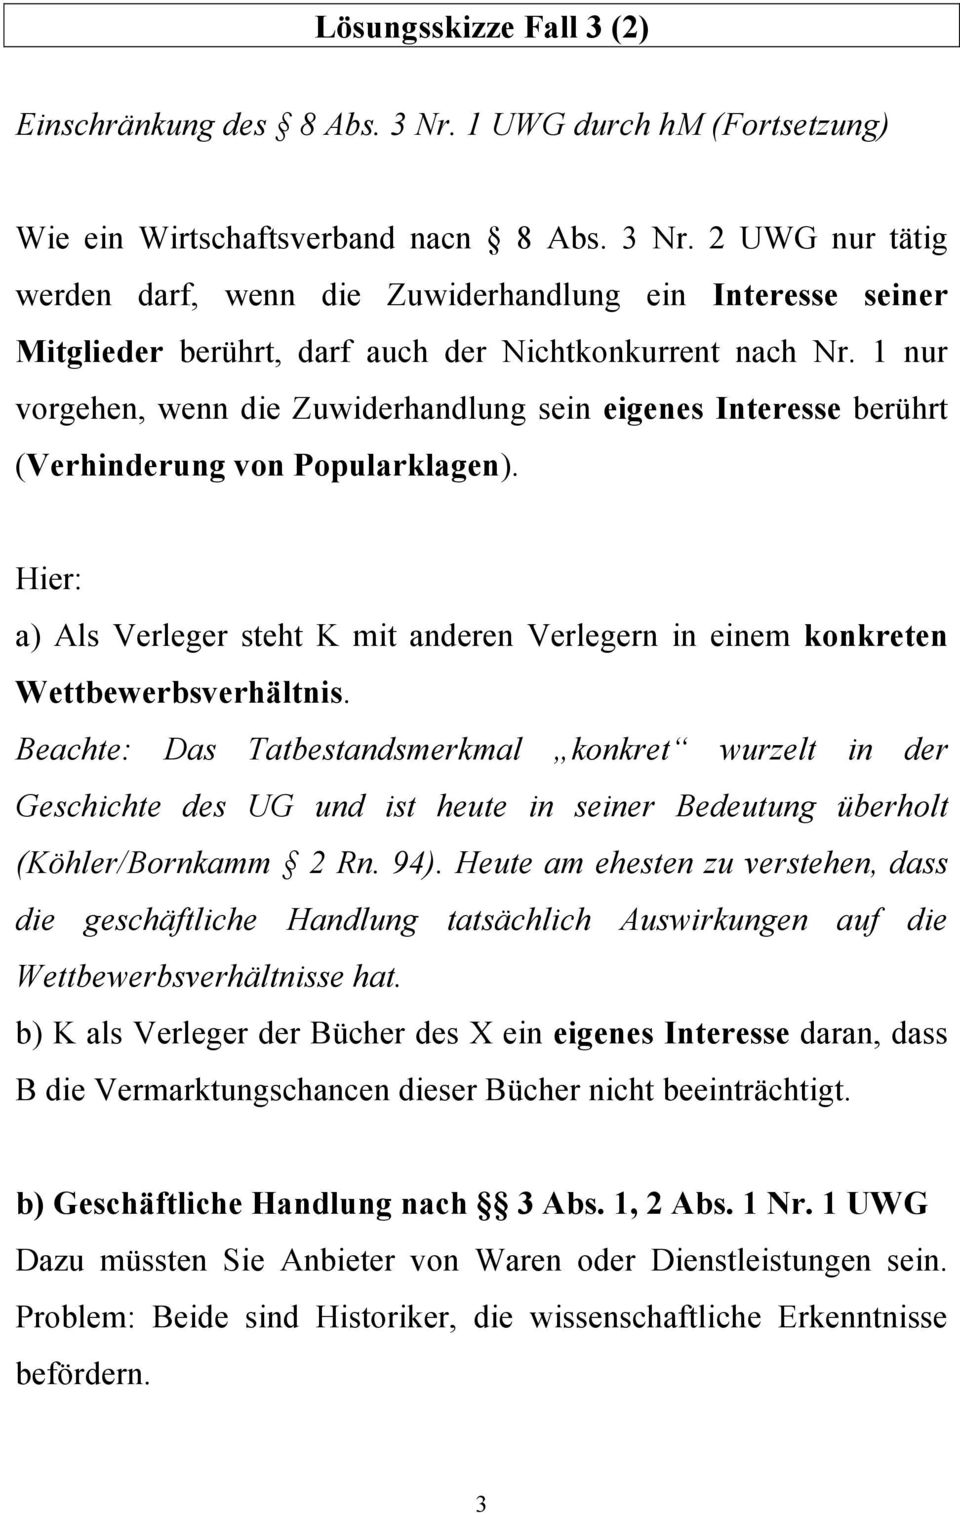 Beachte: Das Tatbestandsmerkmal konkret wurzelt in der Geschichte des UG und ist heute in seiner Bedeutung überholt (Köhler/Bornkamm 2 Rn. 94).